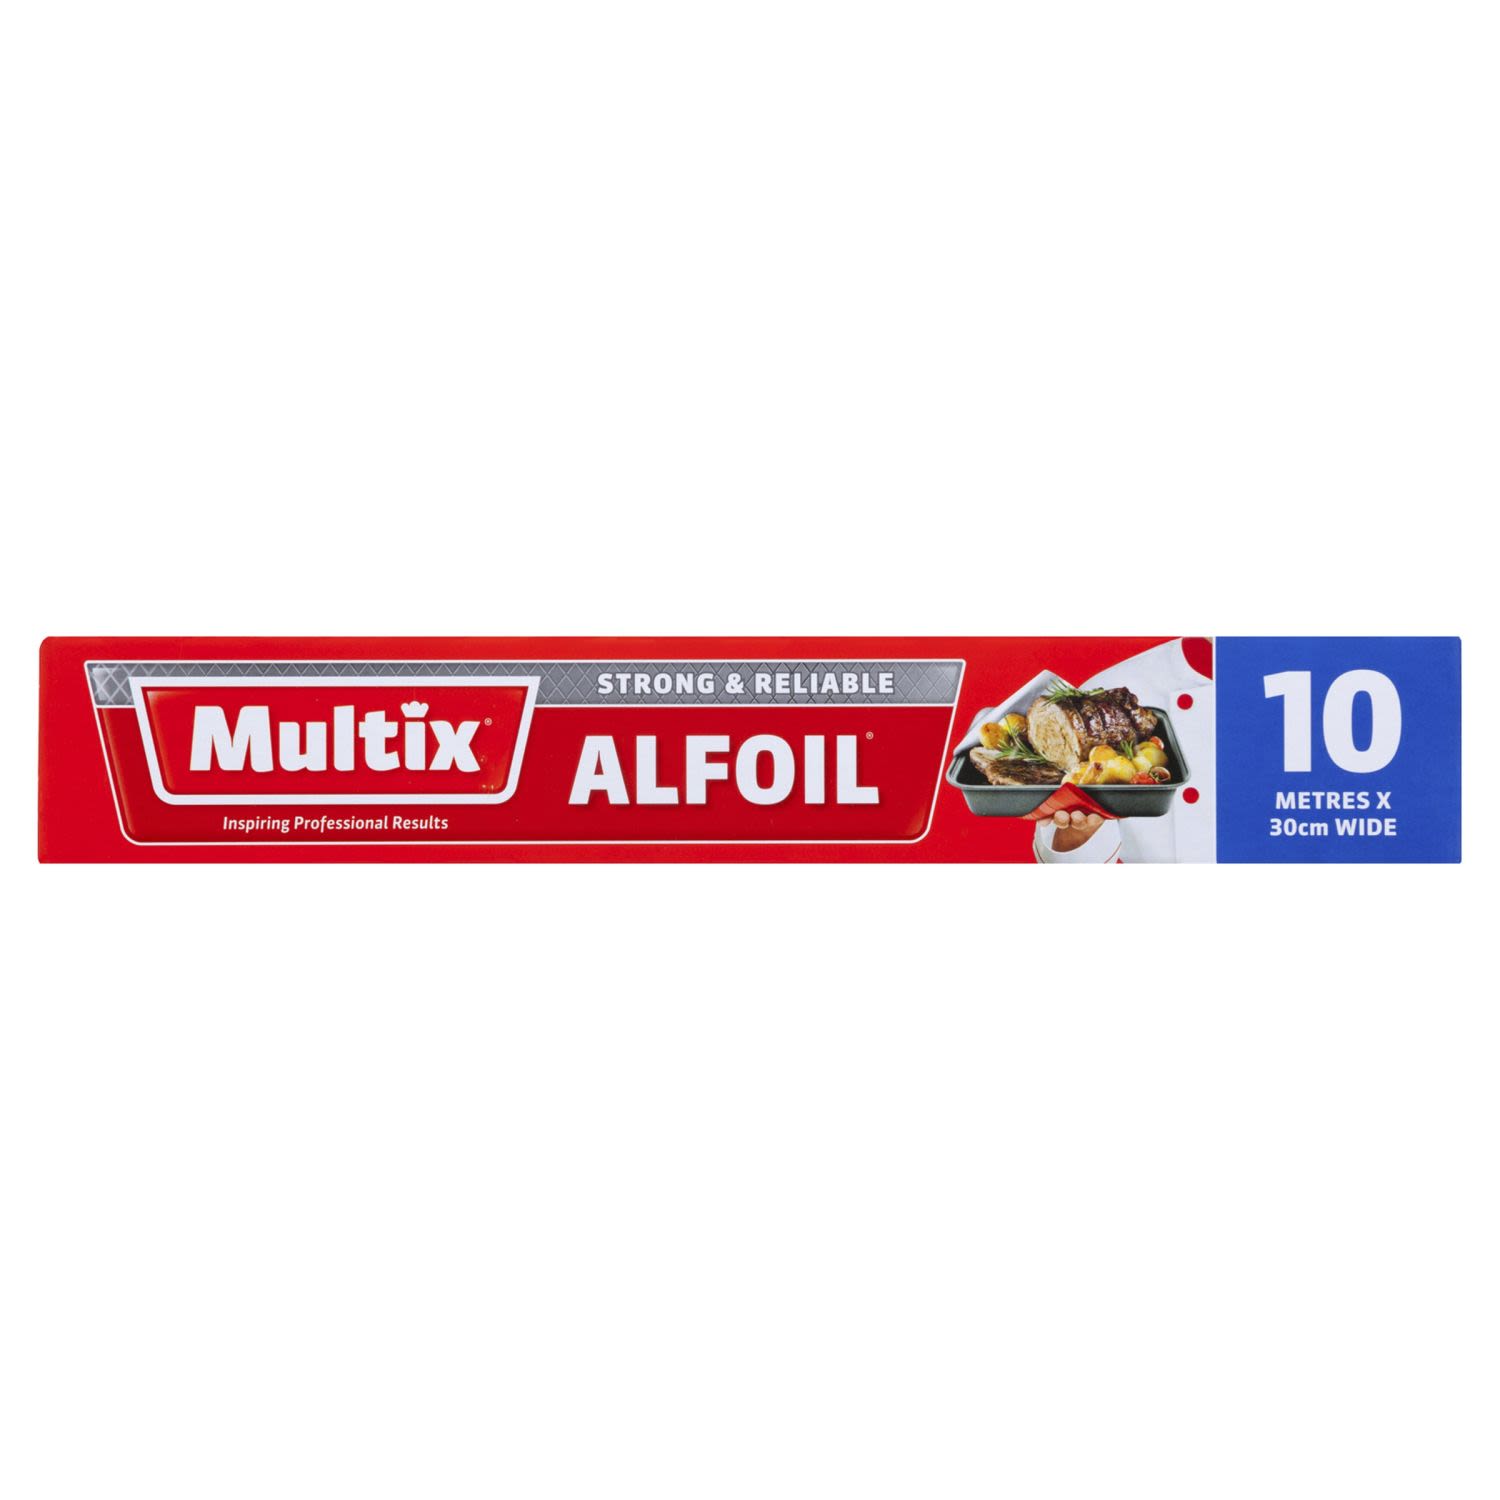 Multix Alfoil 10m x 30cm, 1 Each